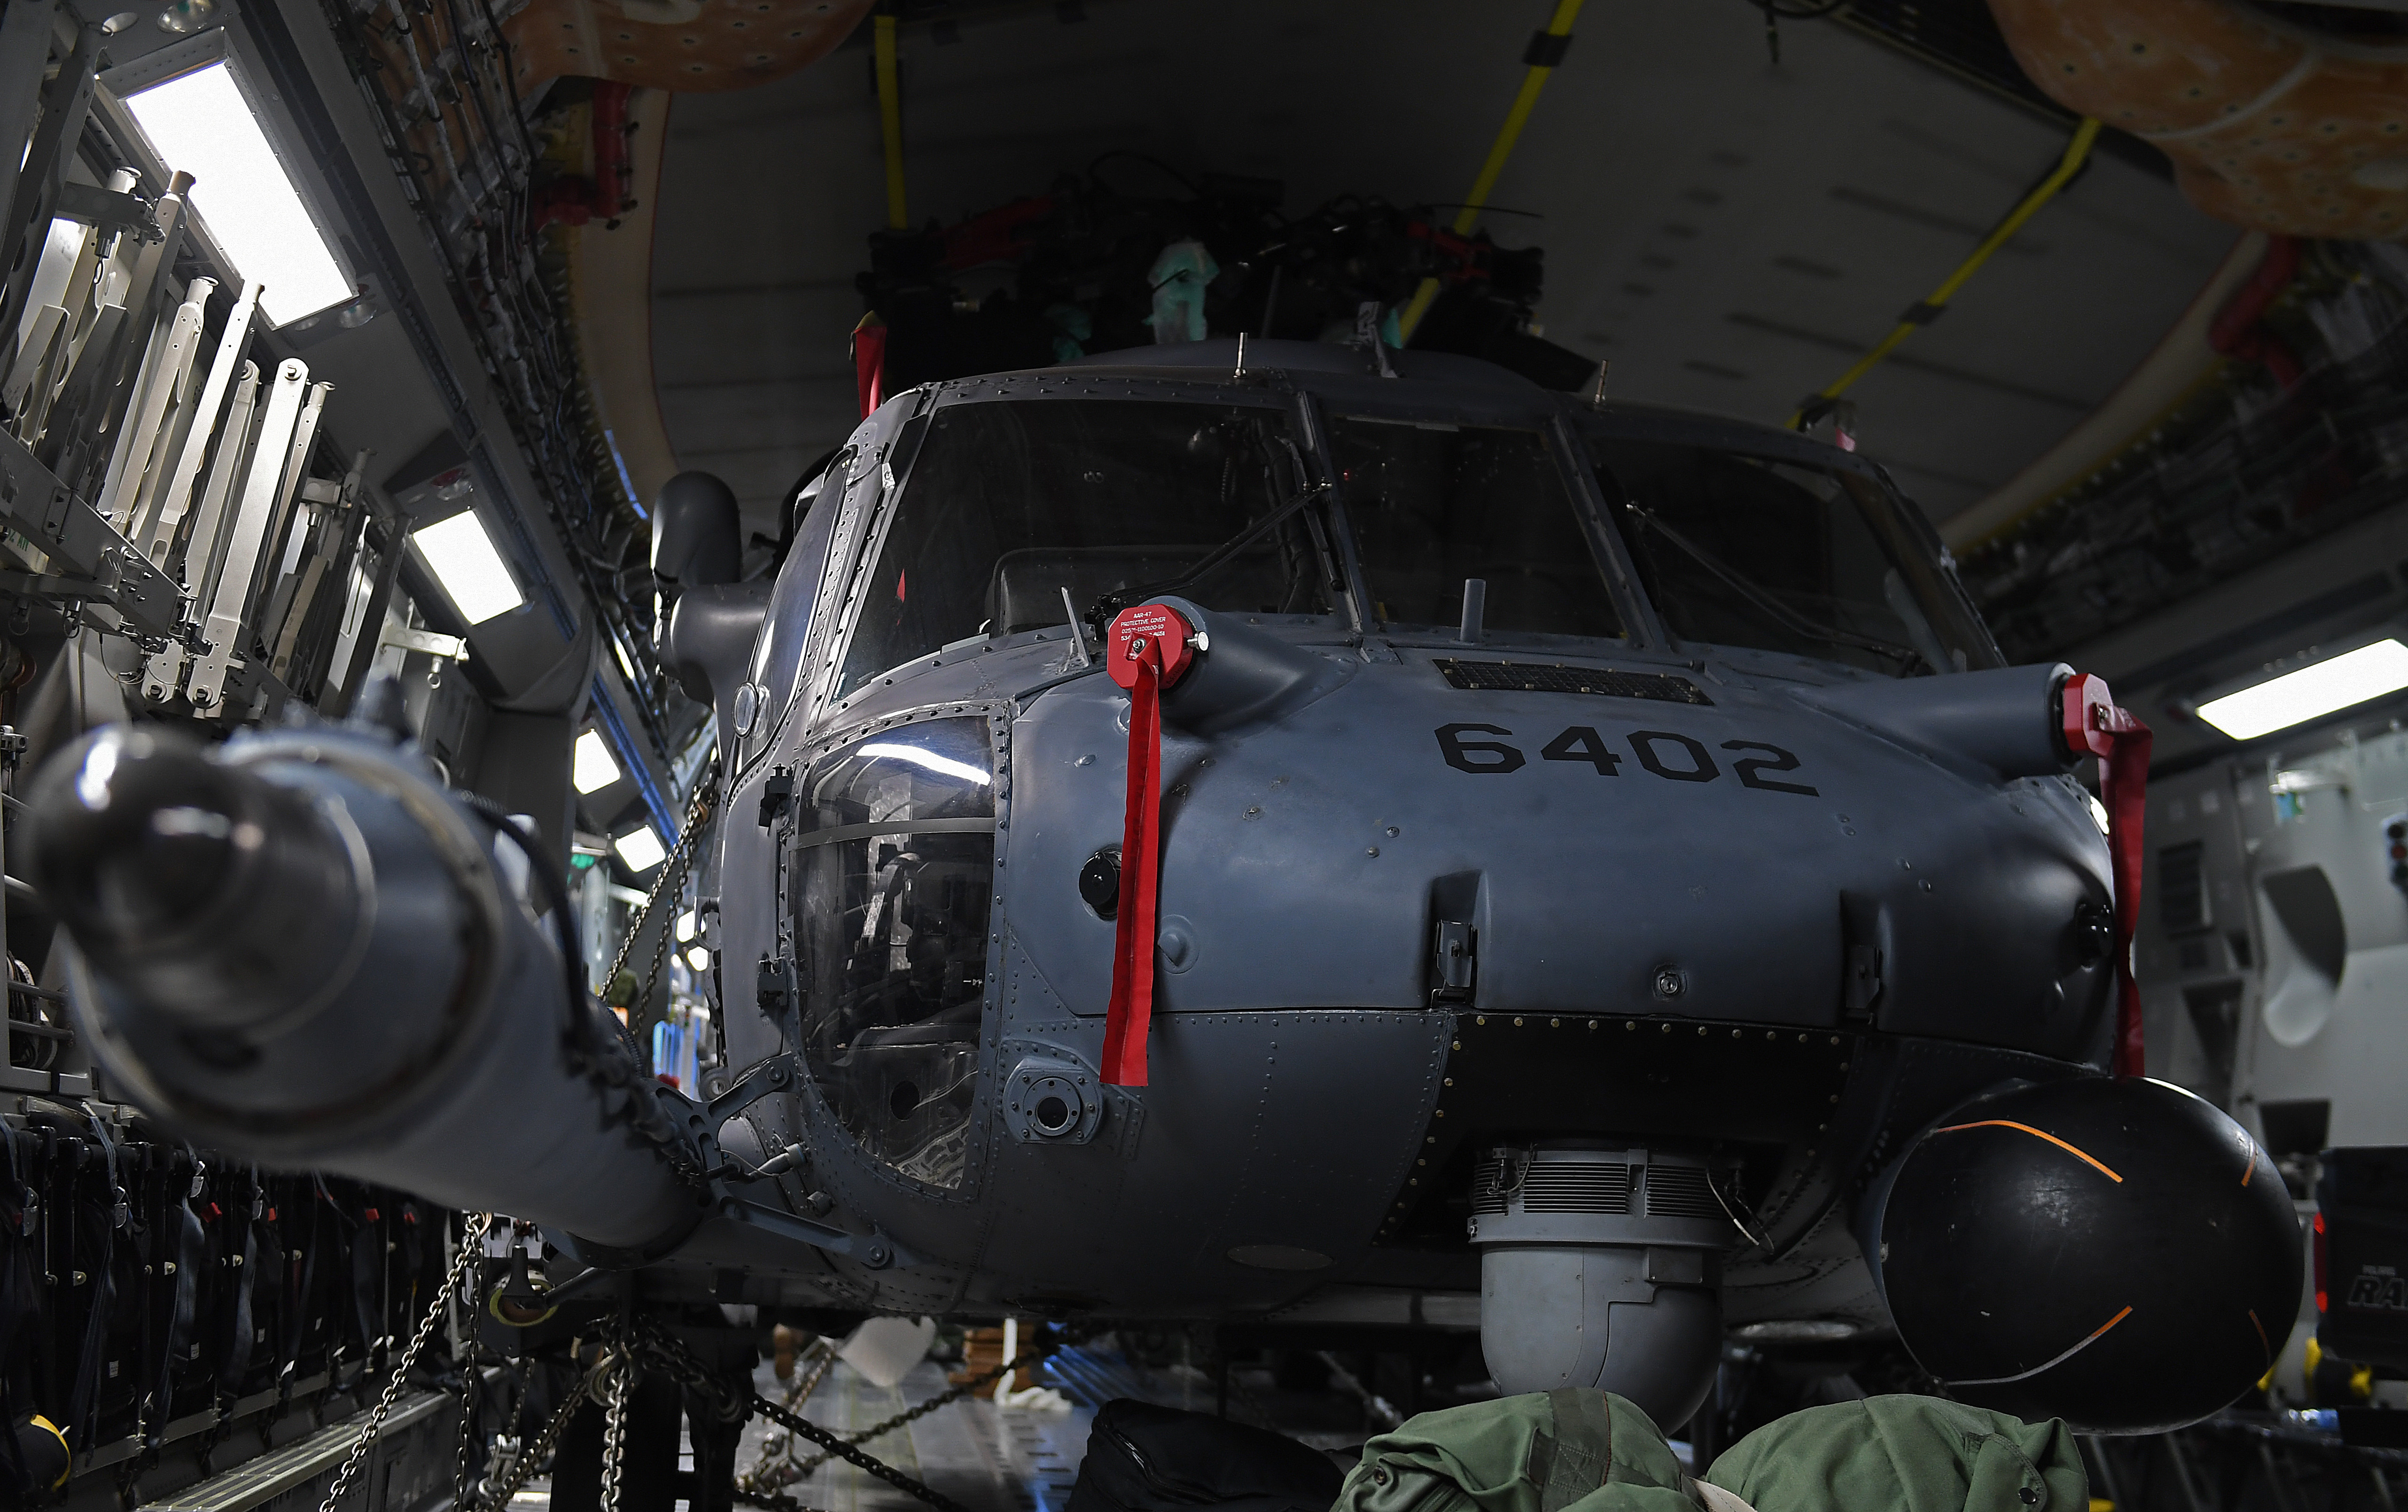 HH-60 Pave Hawk Arrival